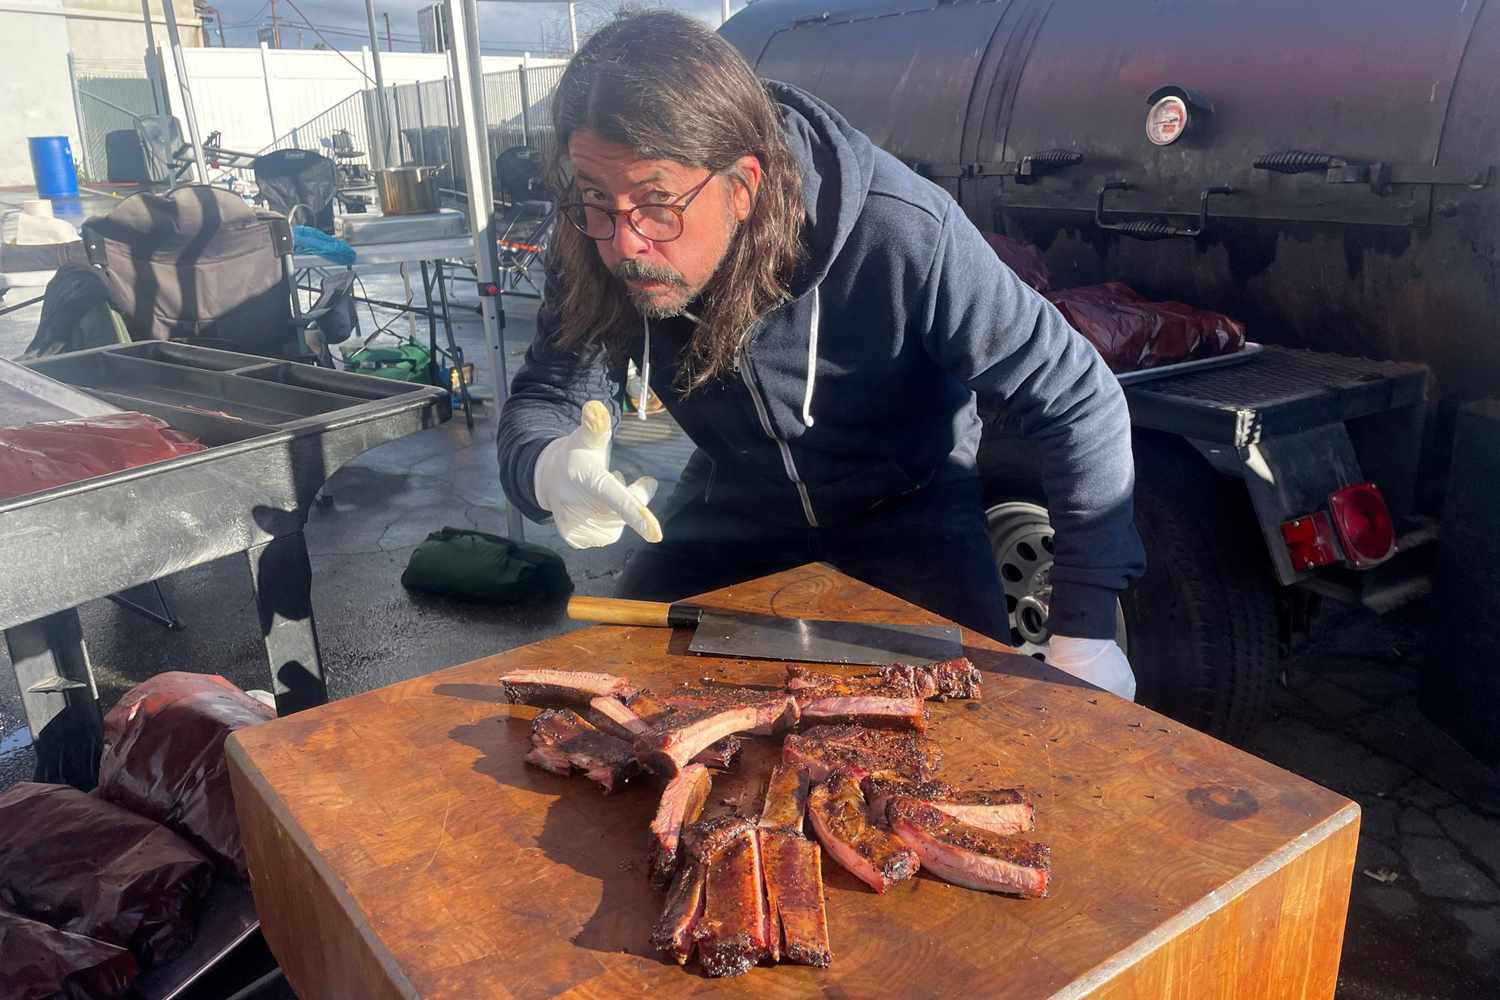 Dave Grohl a passé 16 heures à préparer un BBQ pour les sans-abri de Los Angeles